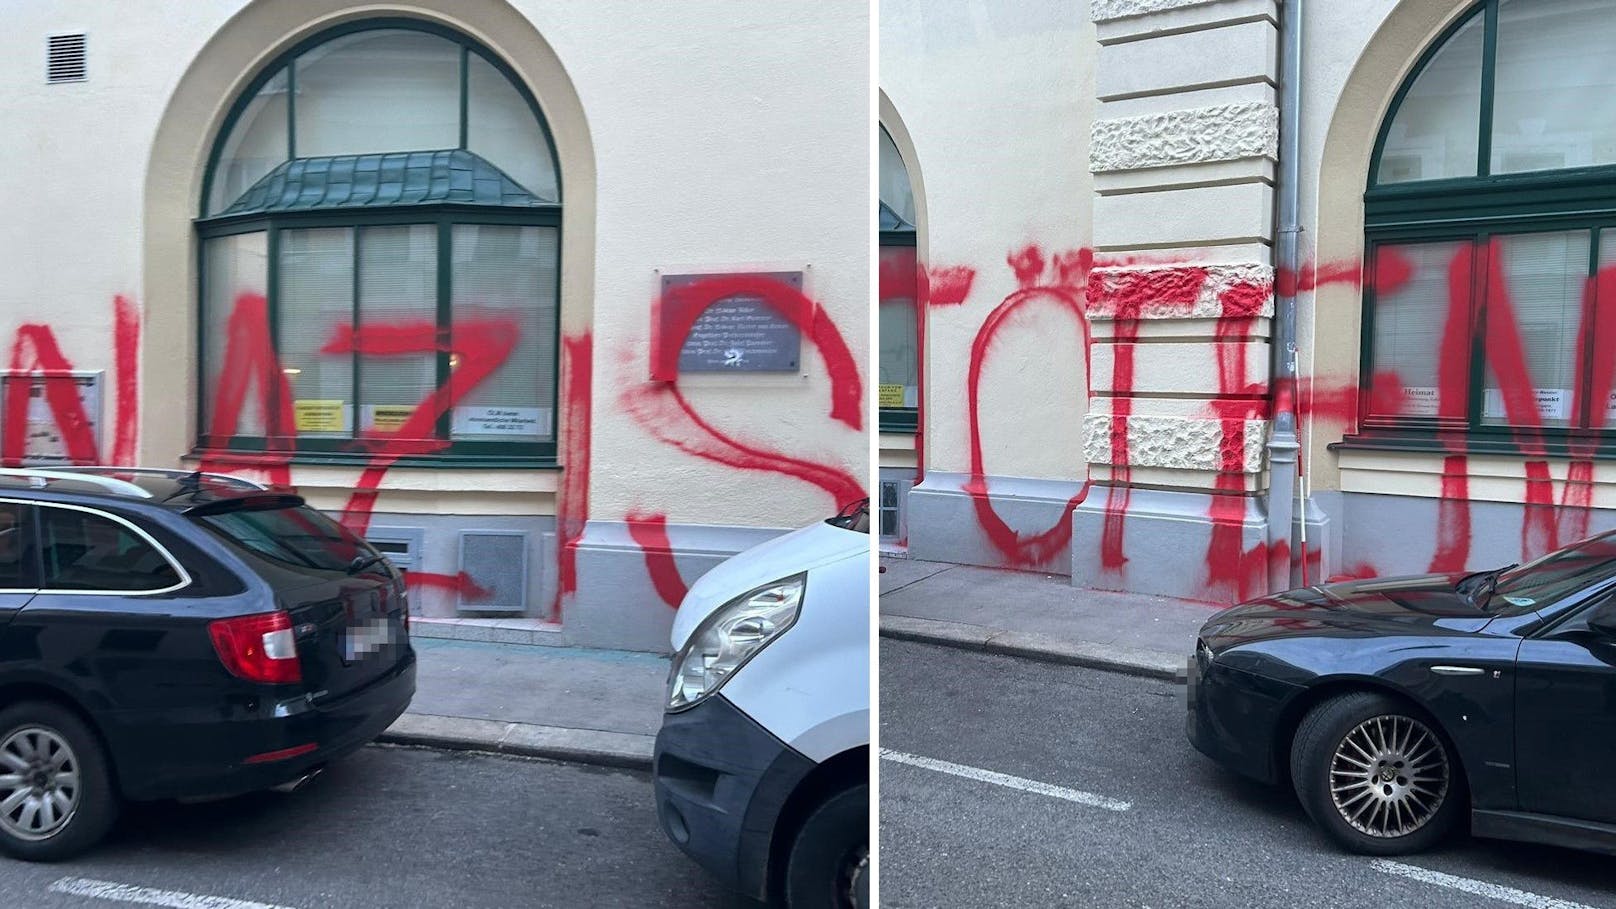 "Nazis töten": Spray-Attacke auf Burschenschaft in Wien